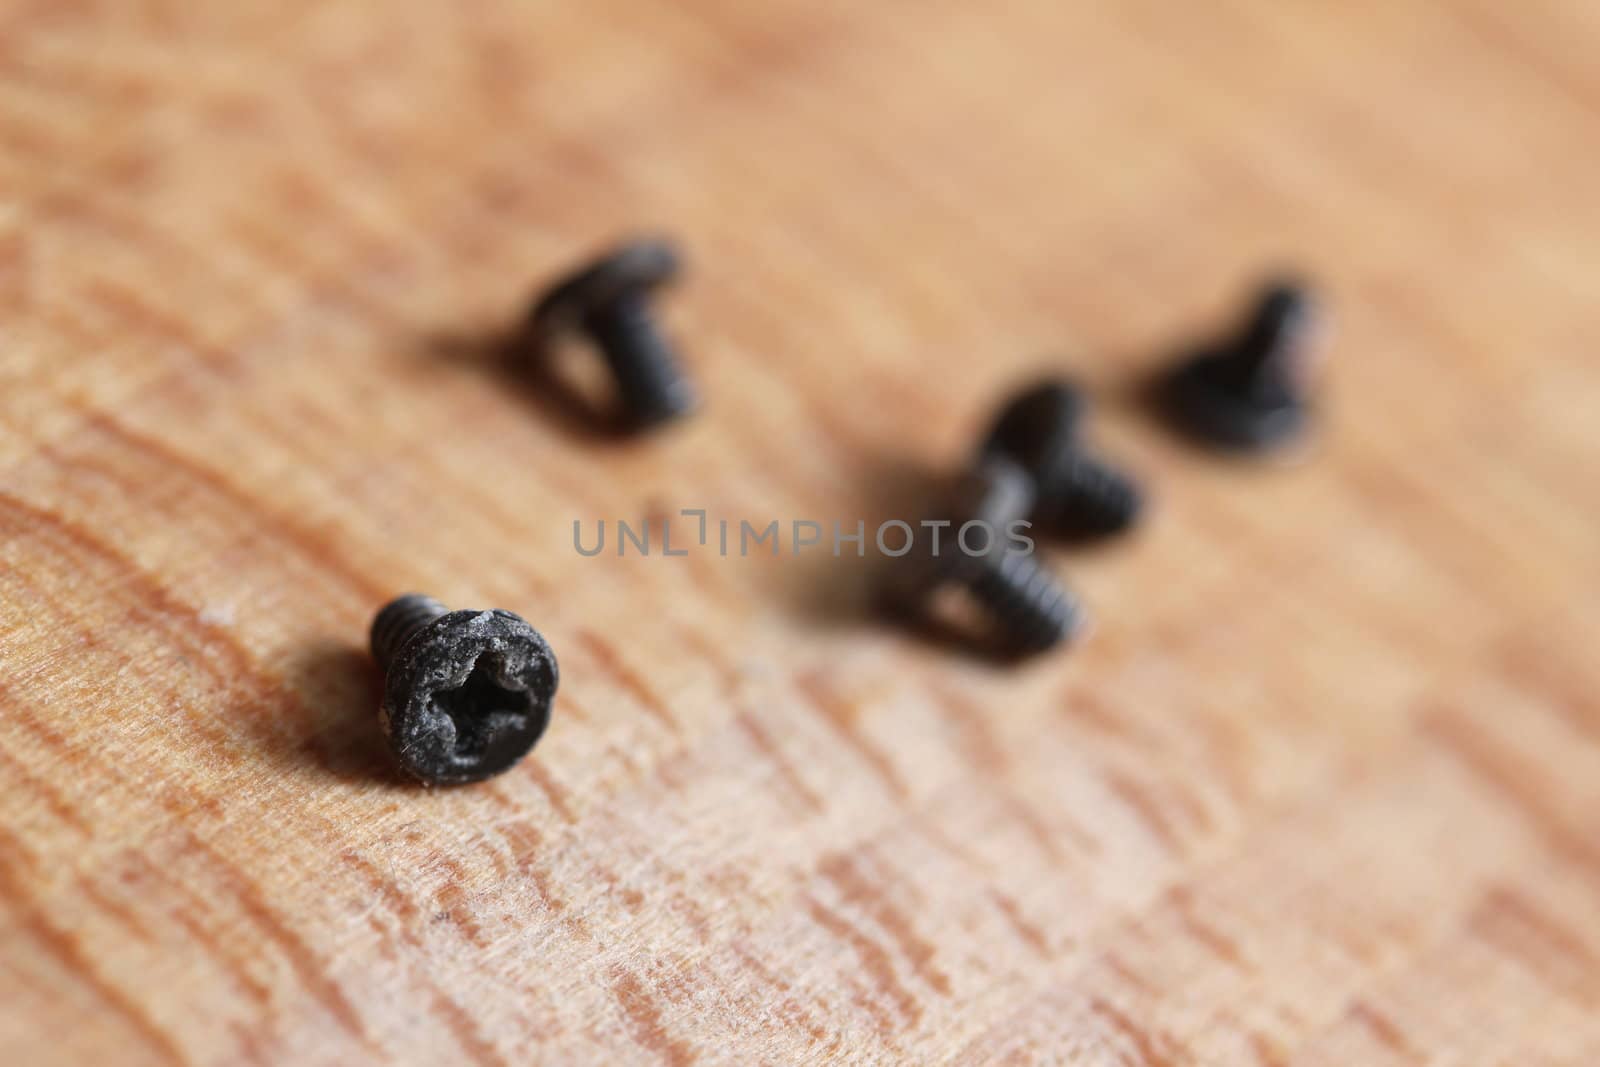 little screws by Teka77